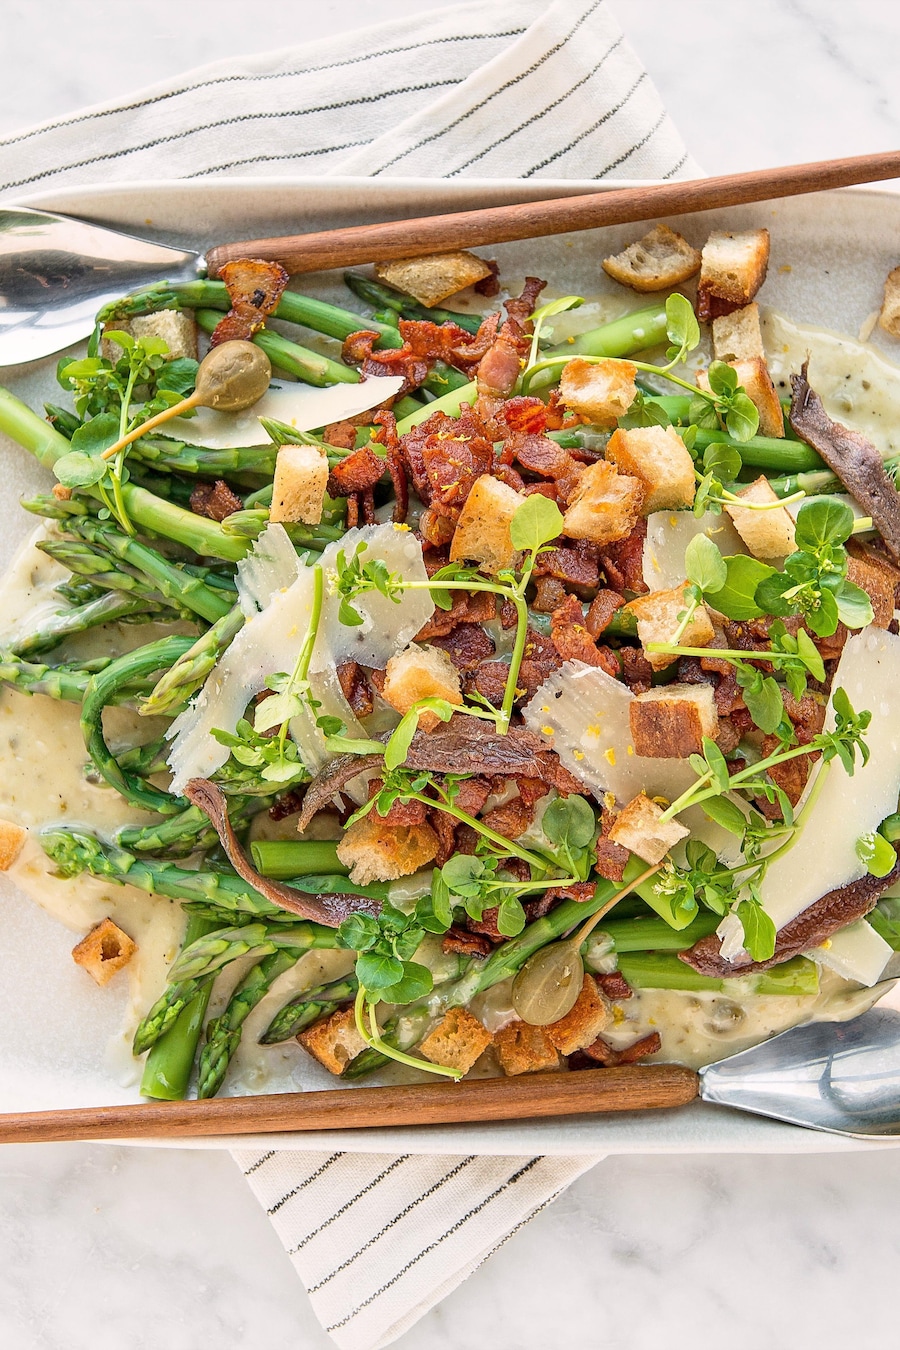 Des asperges avec tous les ingrédients du salade César dans une assiette de service.